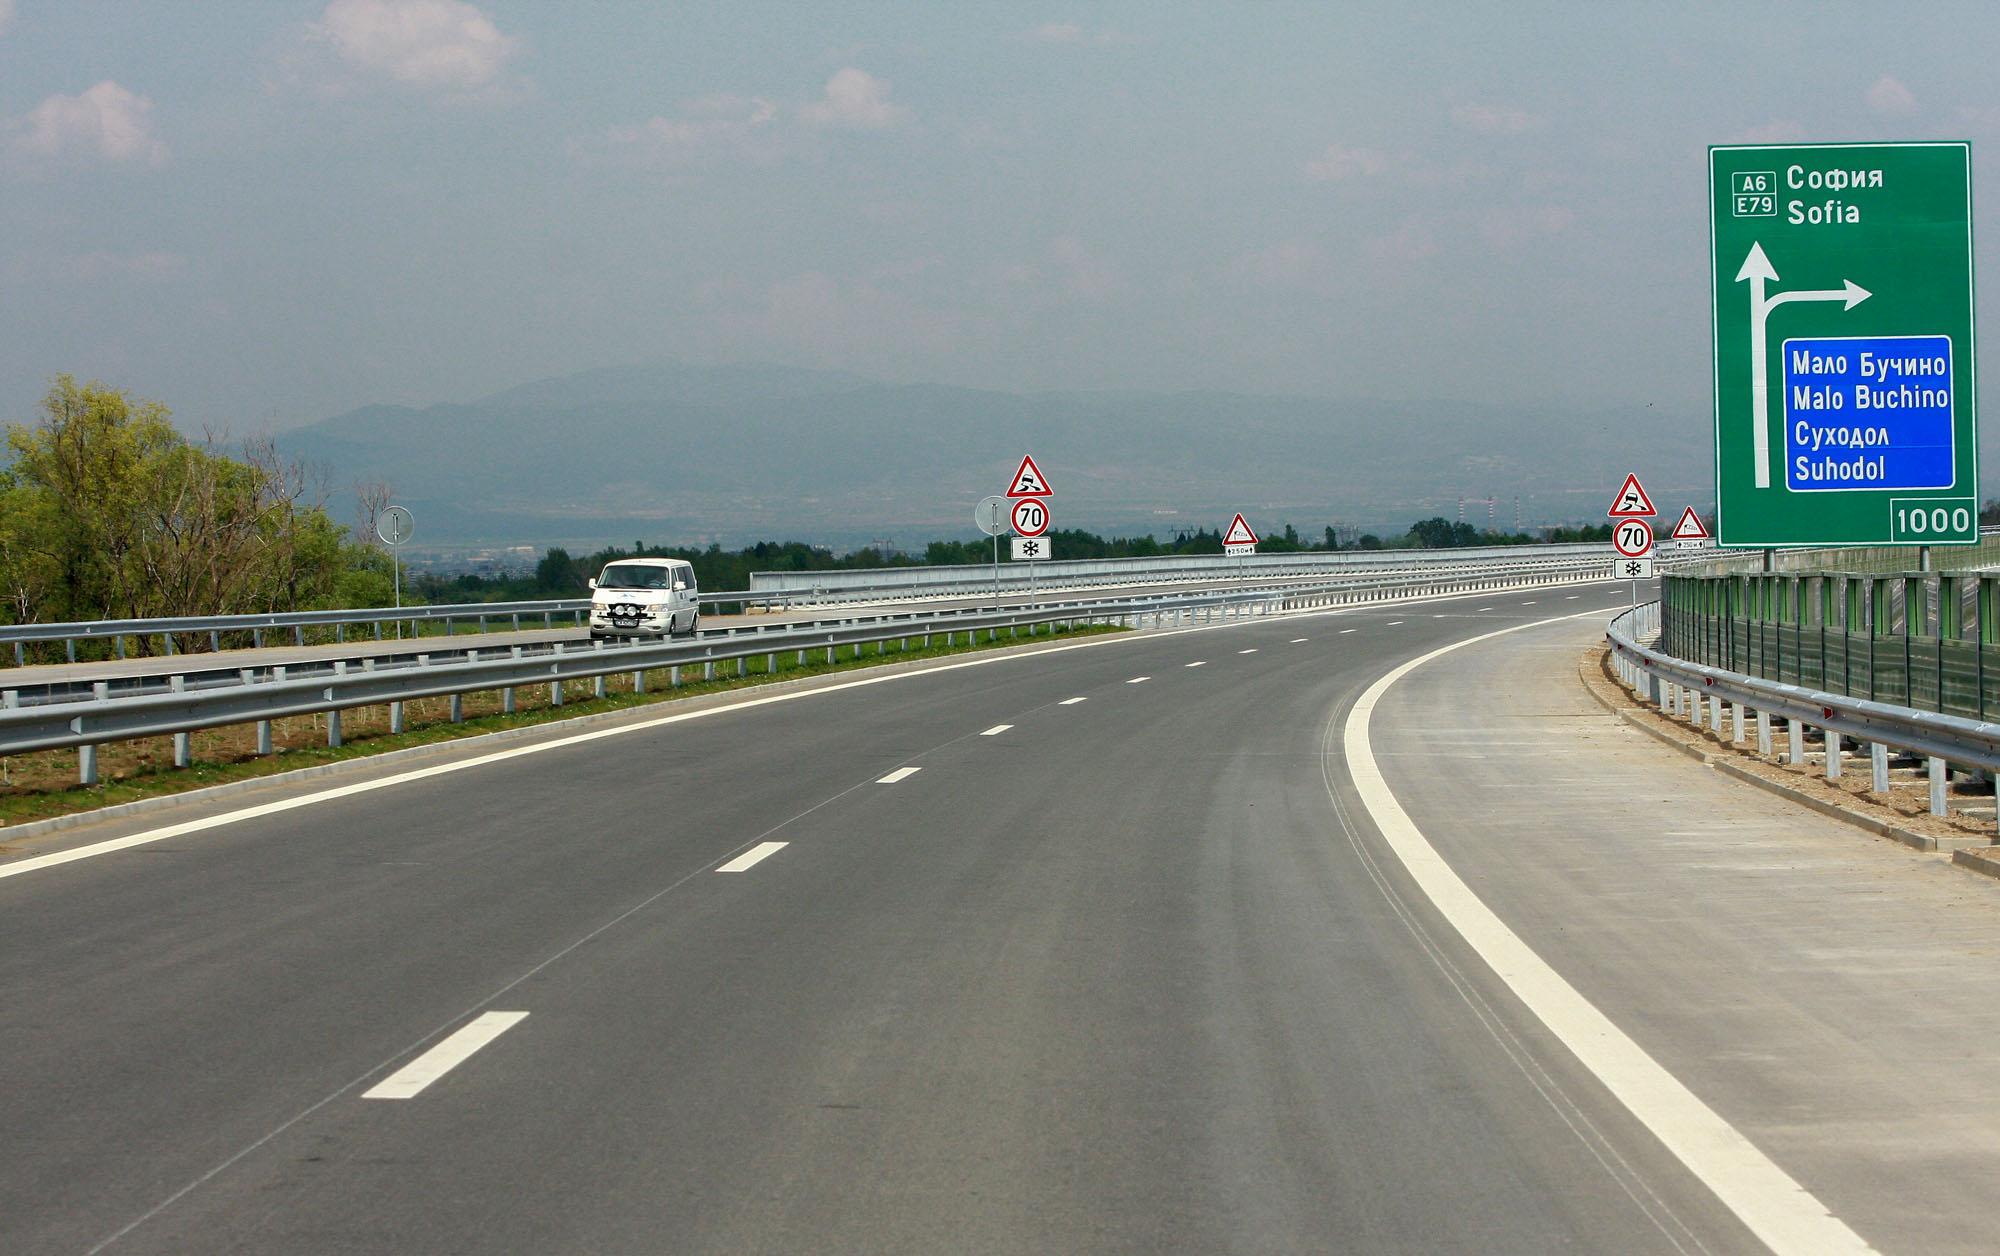 Разрешават 140 км/час по магистралите, Борисов - ”за”